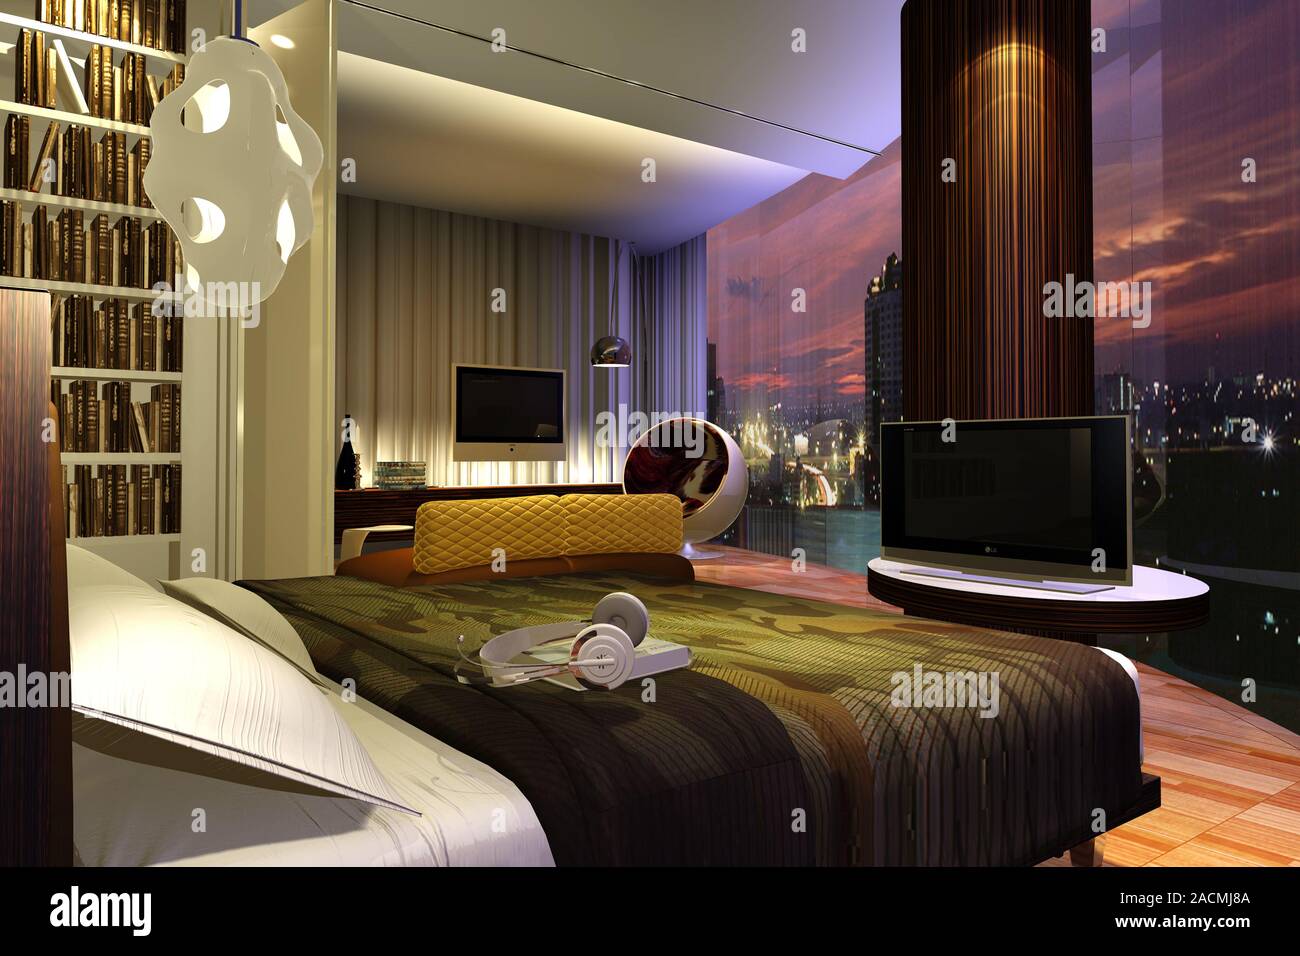 Chambre à coucher, de la visualisation 3D Banque D'Images